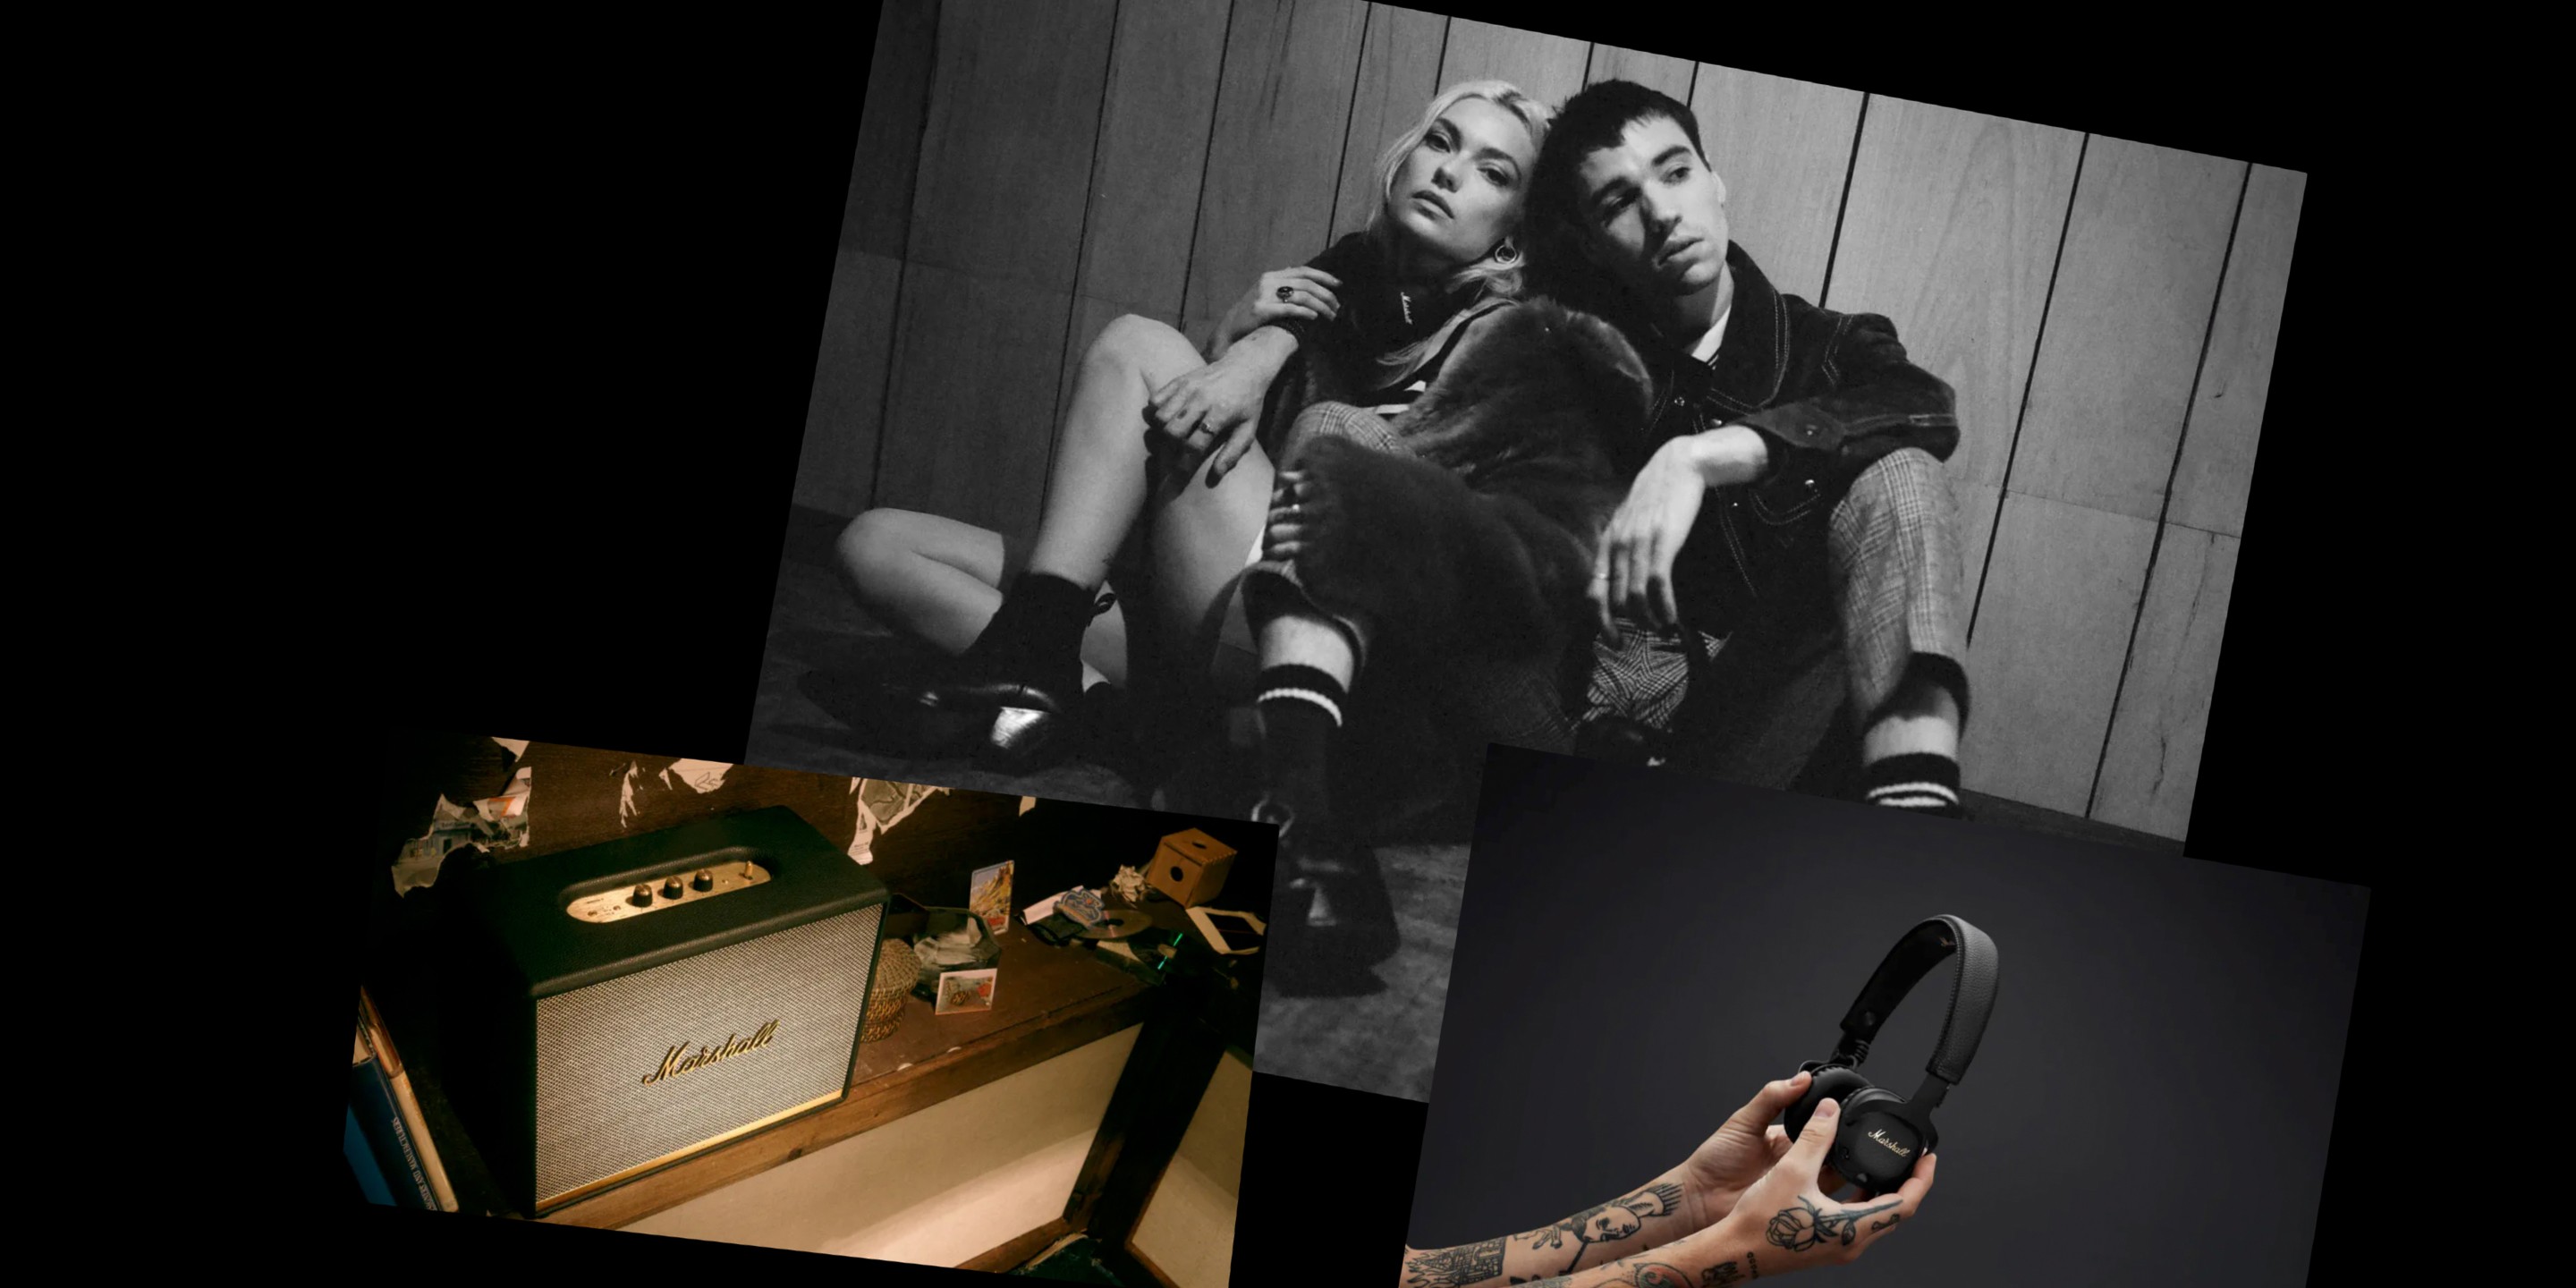 Collage aus drei Fotos, die einen Marshall Home Speaker und einen Marshall Black Headphone zeigen.